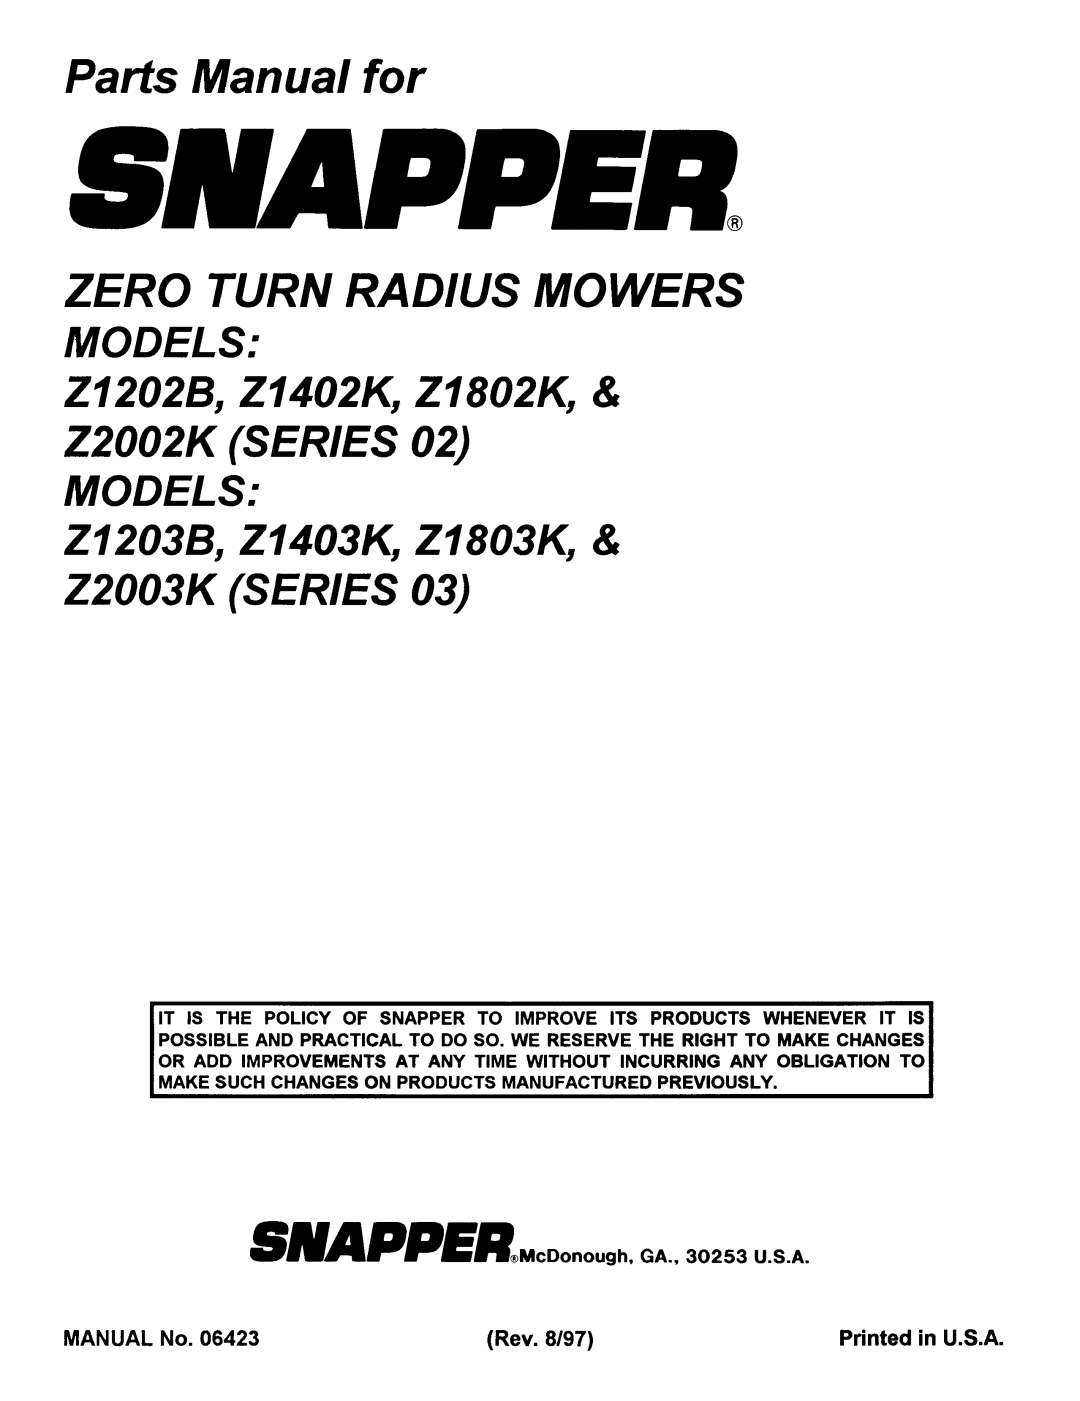 Snapper Z1402K, Z4202M, Z4802M, Z4102M, Z1802K, z2003k, z1403k, Z1203B, Z1202B, Z2003K (Series 03), Z2002K (Series 02), Z1803K 